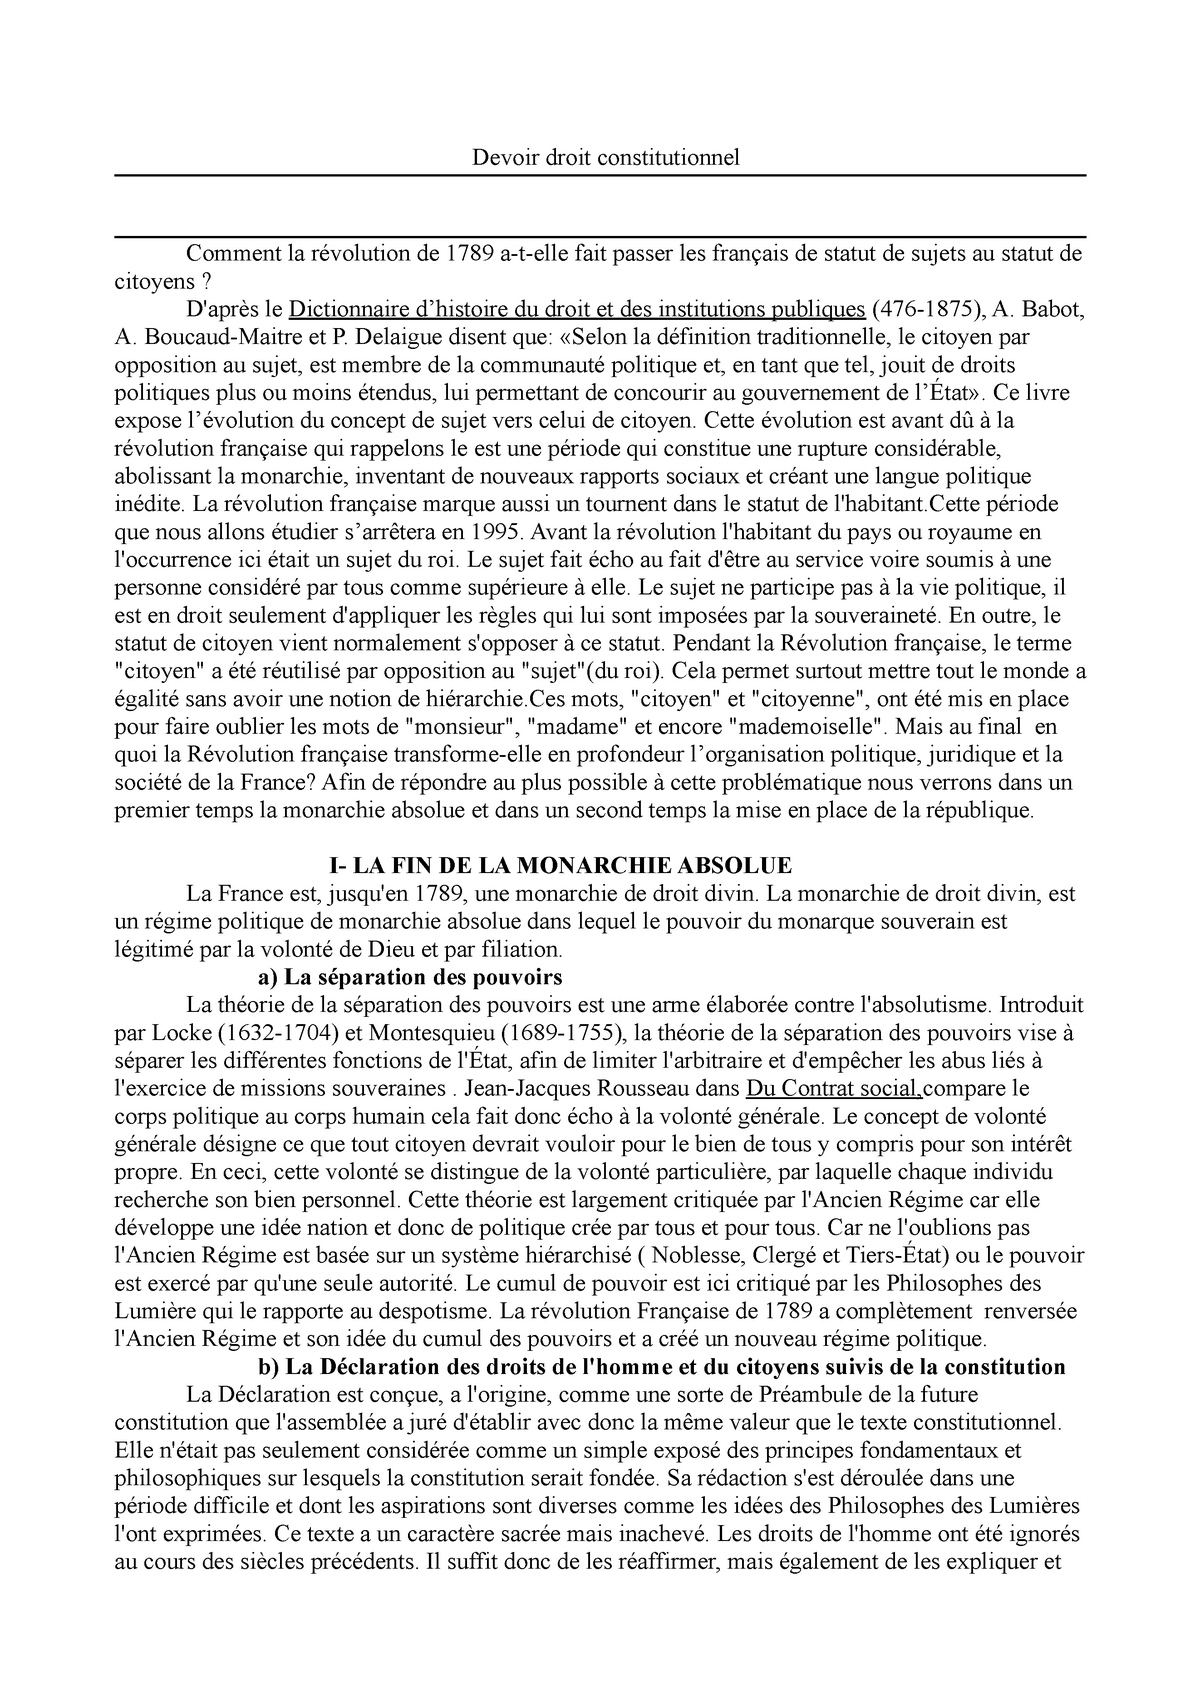 dissertation histoire revolution francaise